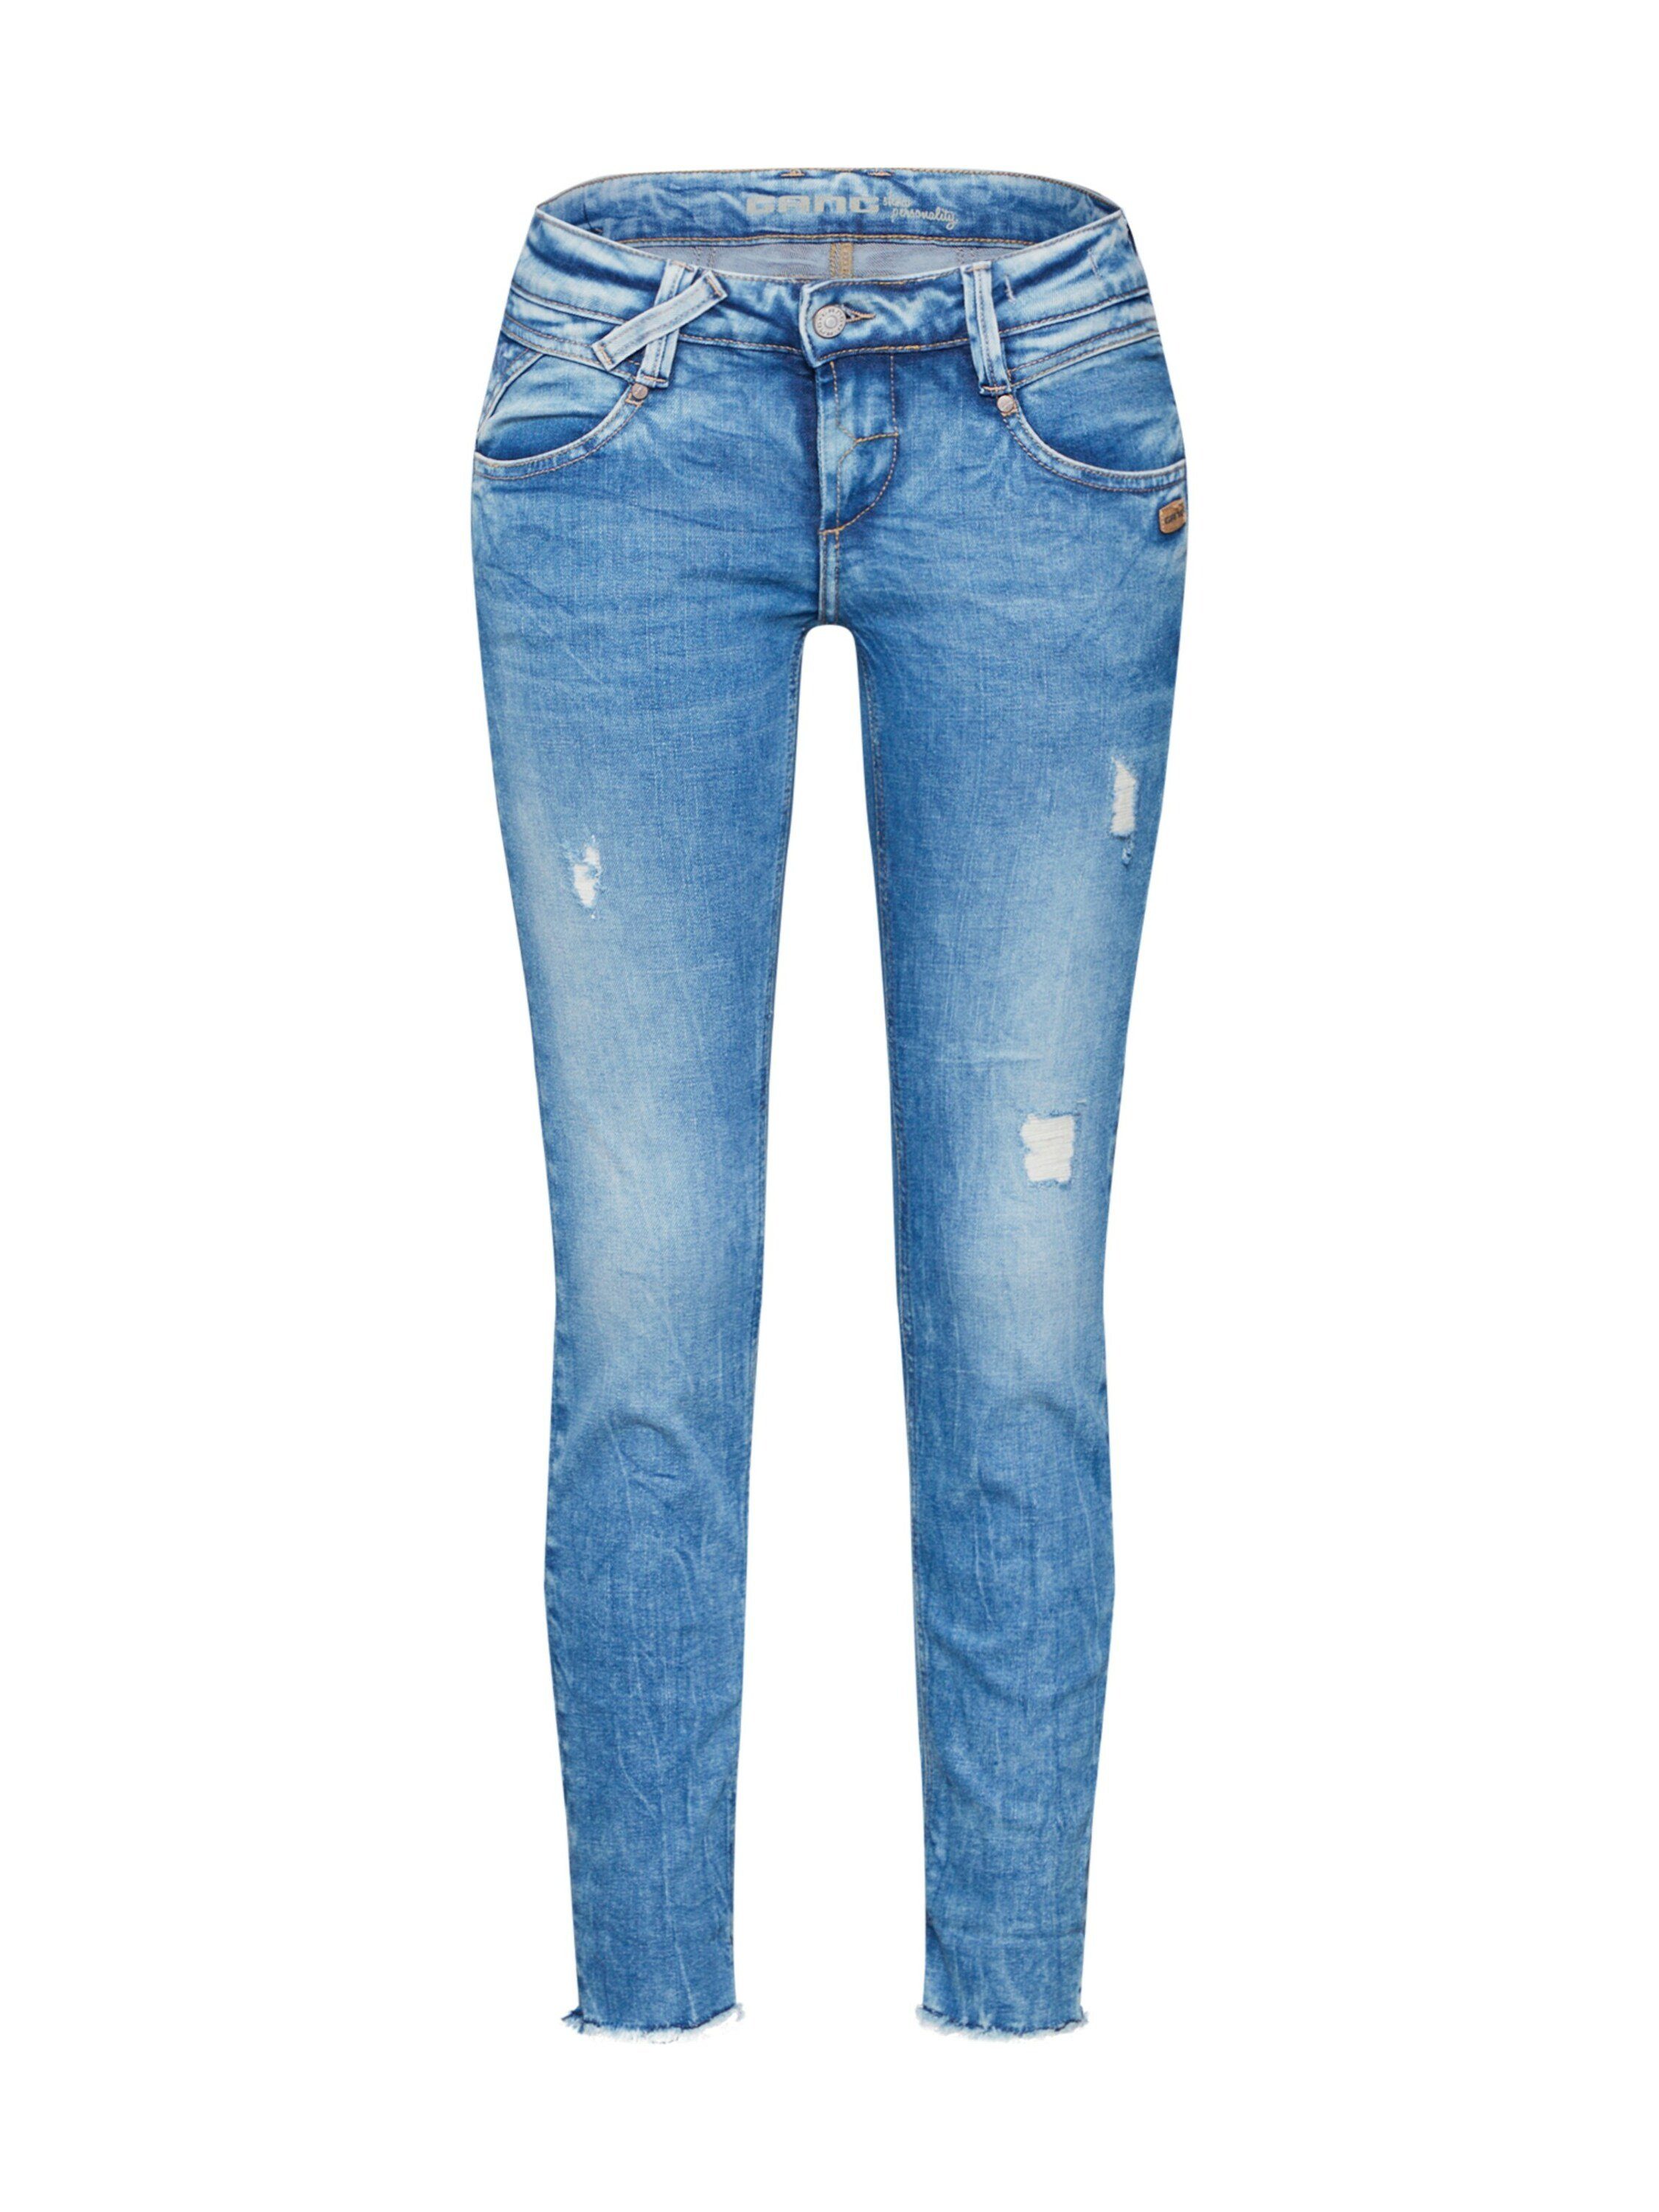 GANG Damen Jeans online kaufen | OTTO